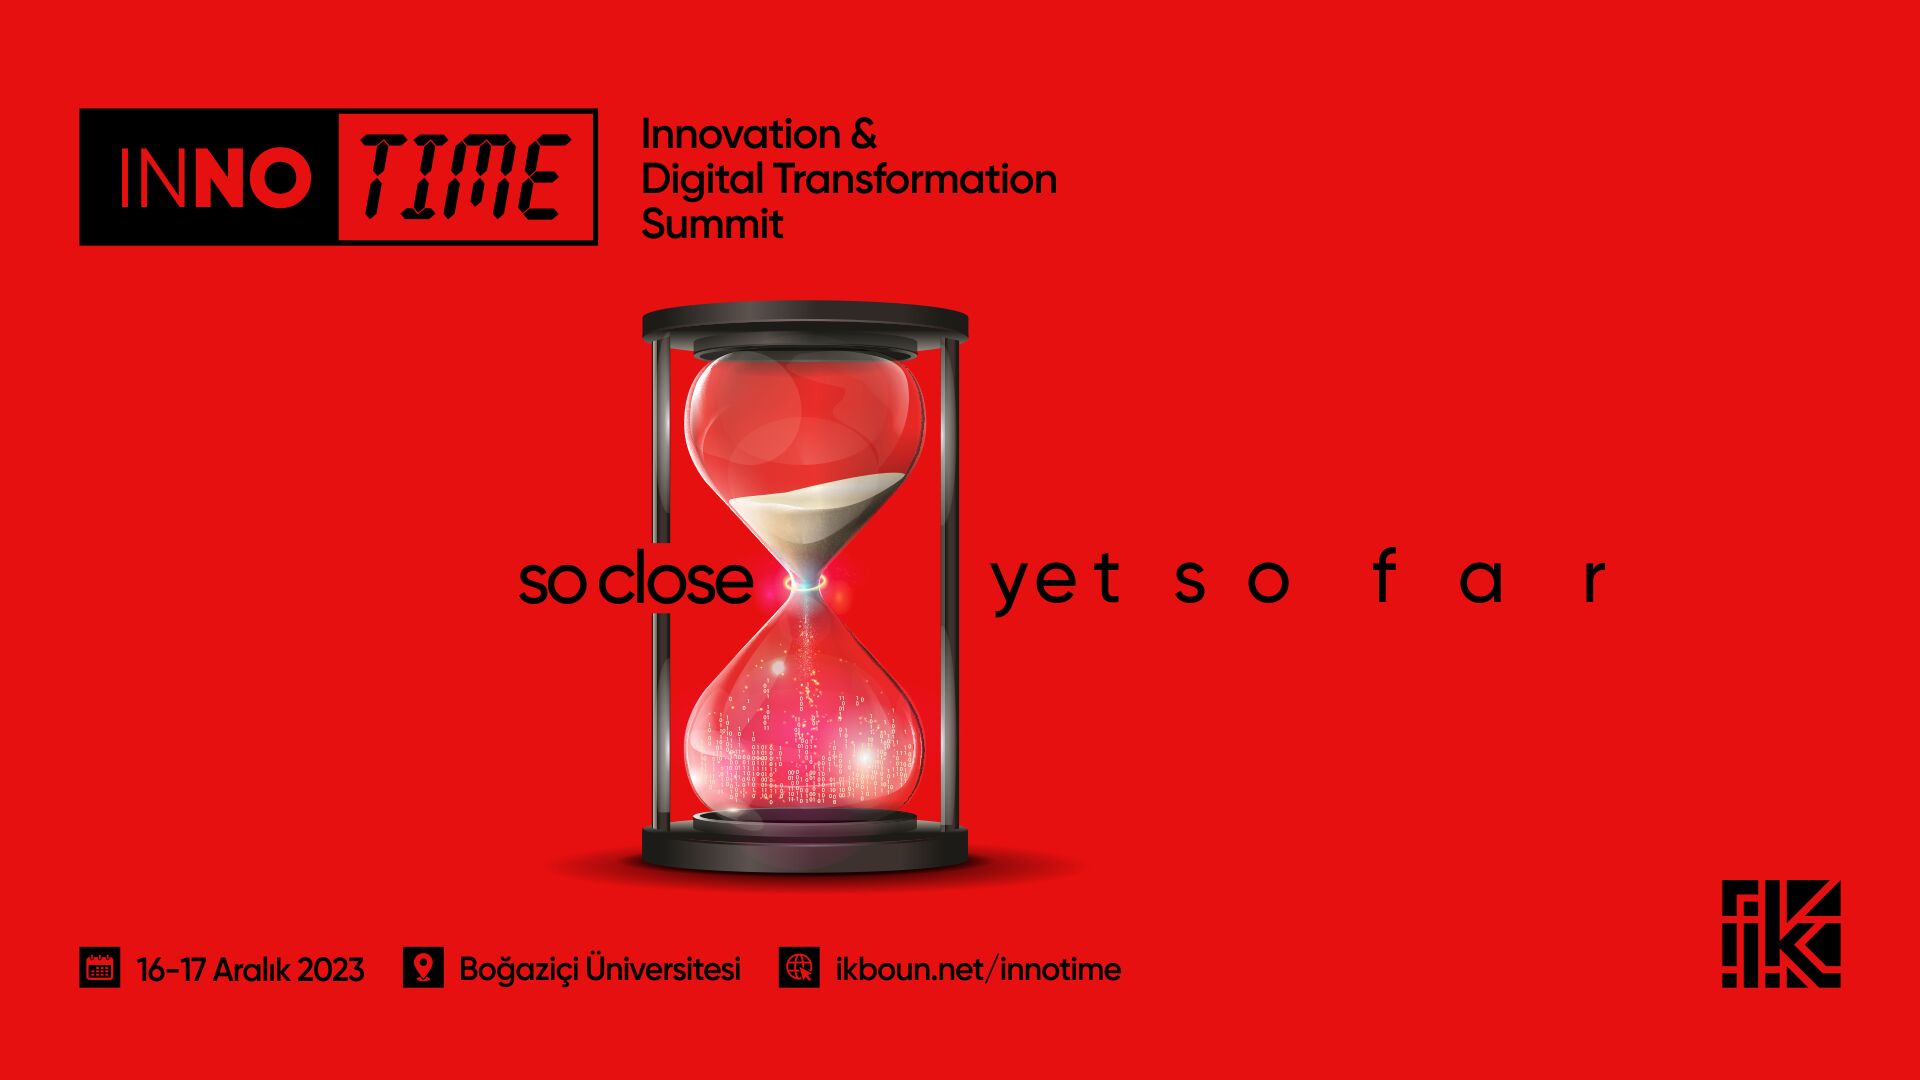 İnovasyon ve Dijital Dönüşüm Zirvesi 'InNoTime: Innovation & Digital Transformation Summit' Seni Bekliyor!